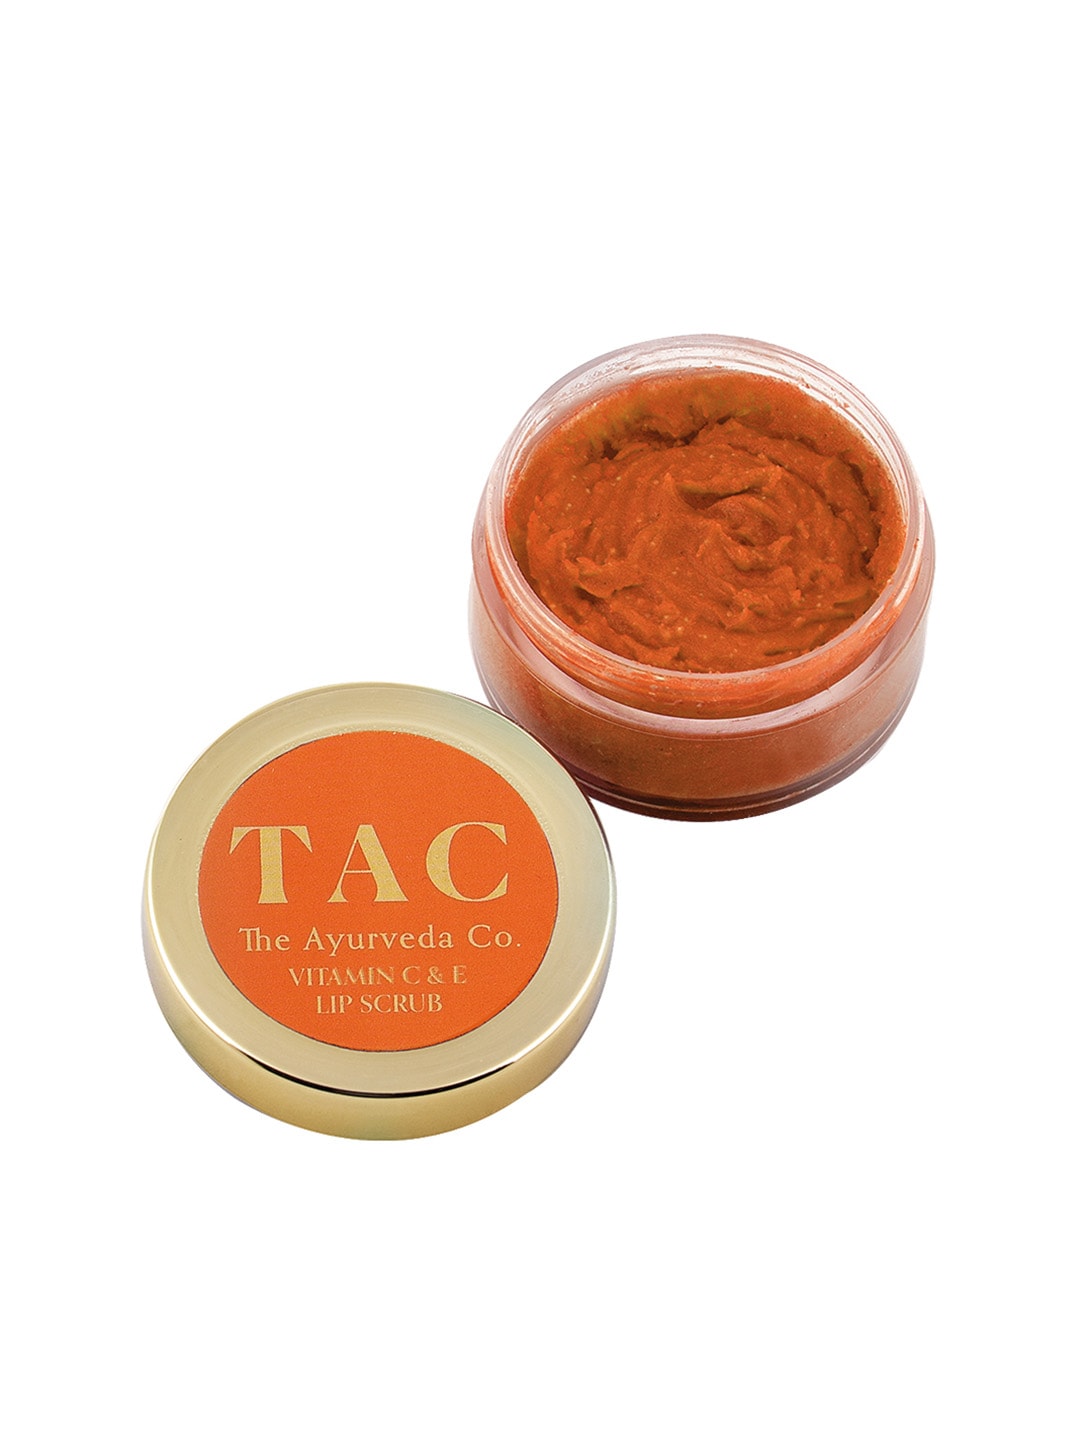 TAC - The Ayurveda Co. Vitamin C, E & Orange Lip Scrub for Dark, Dry & Chapped Lips Price in India